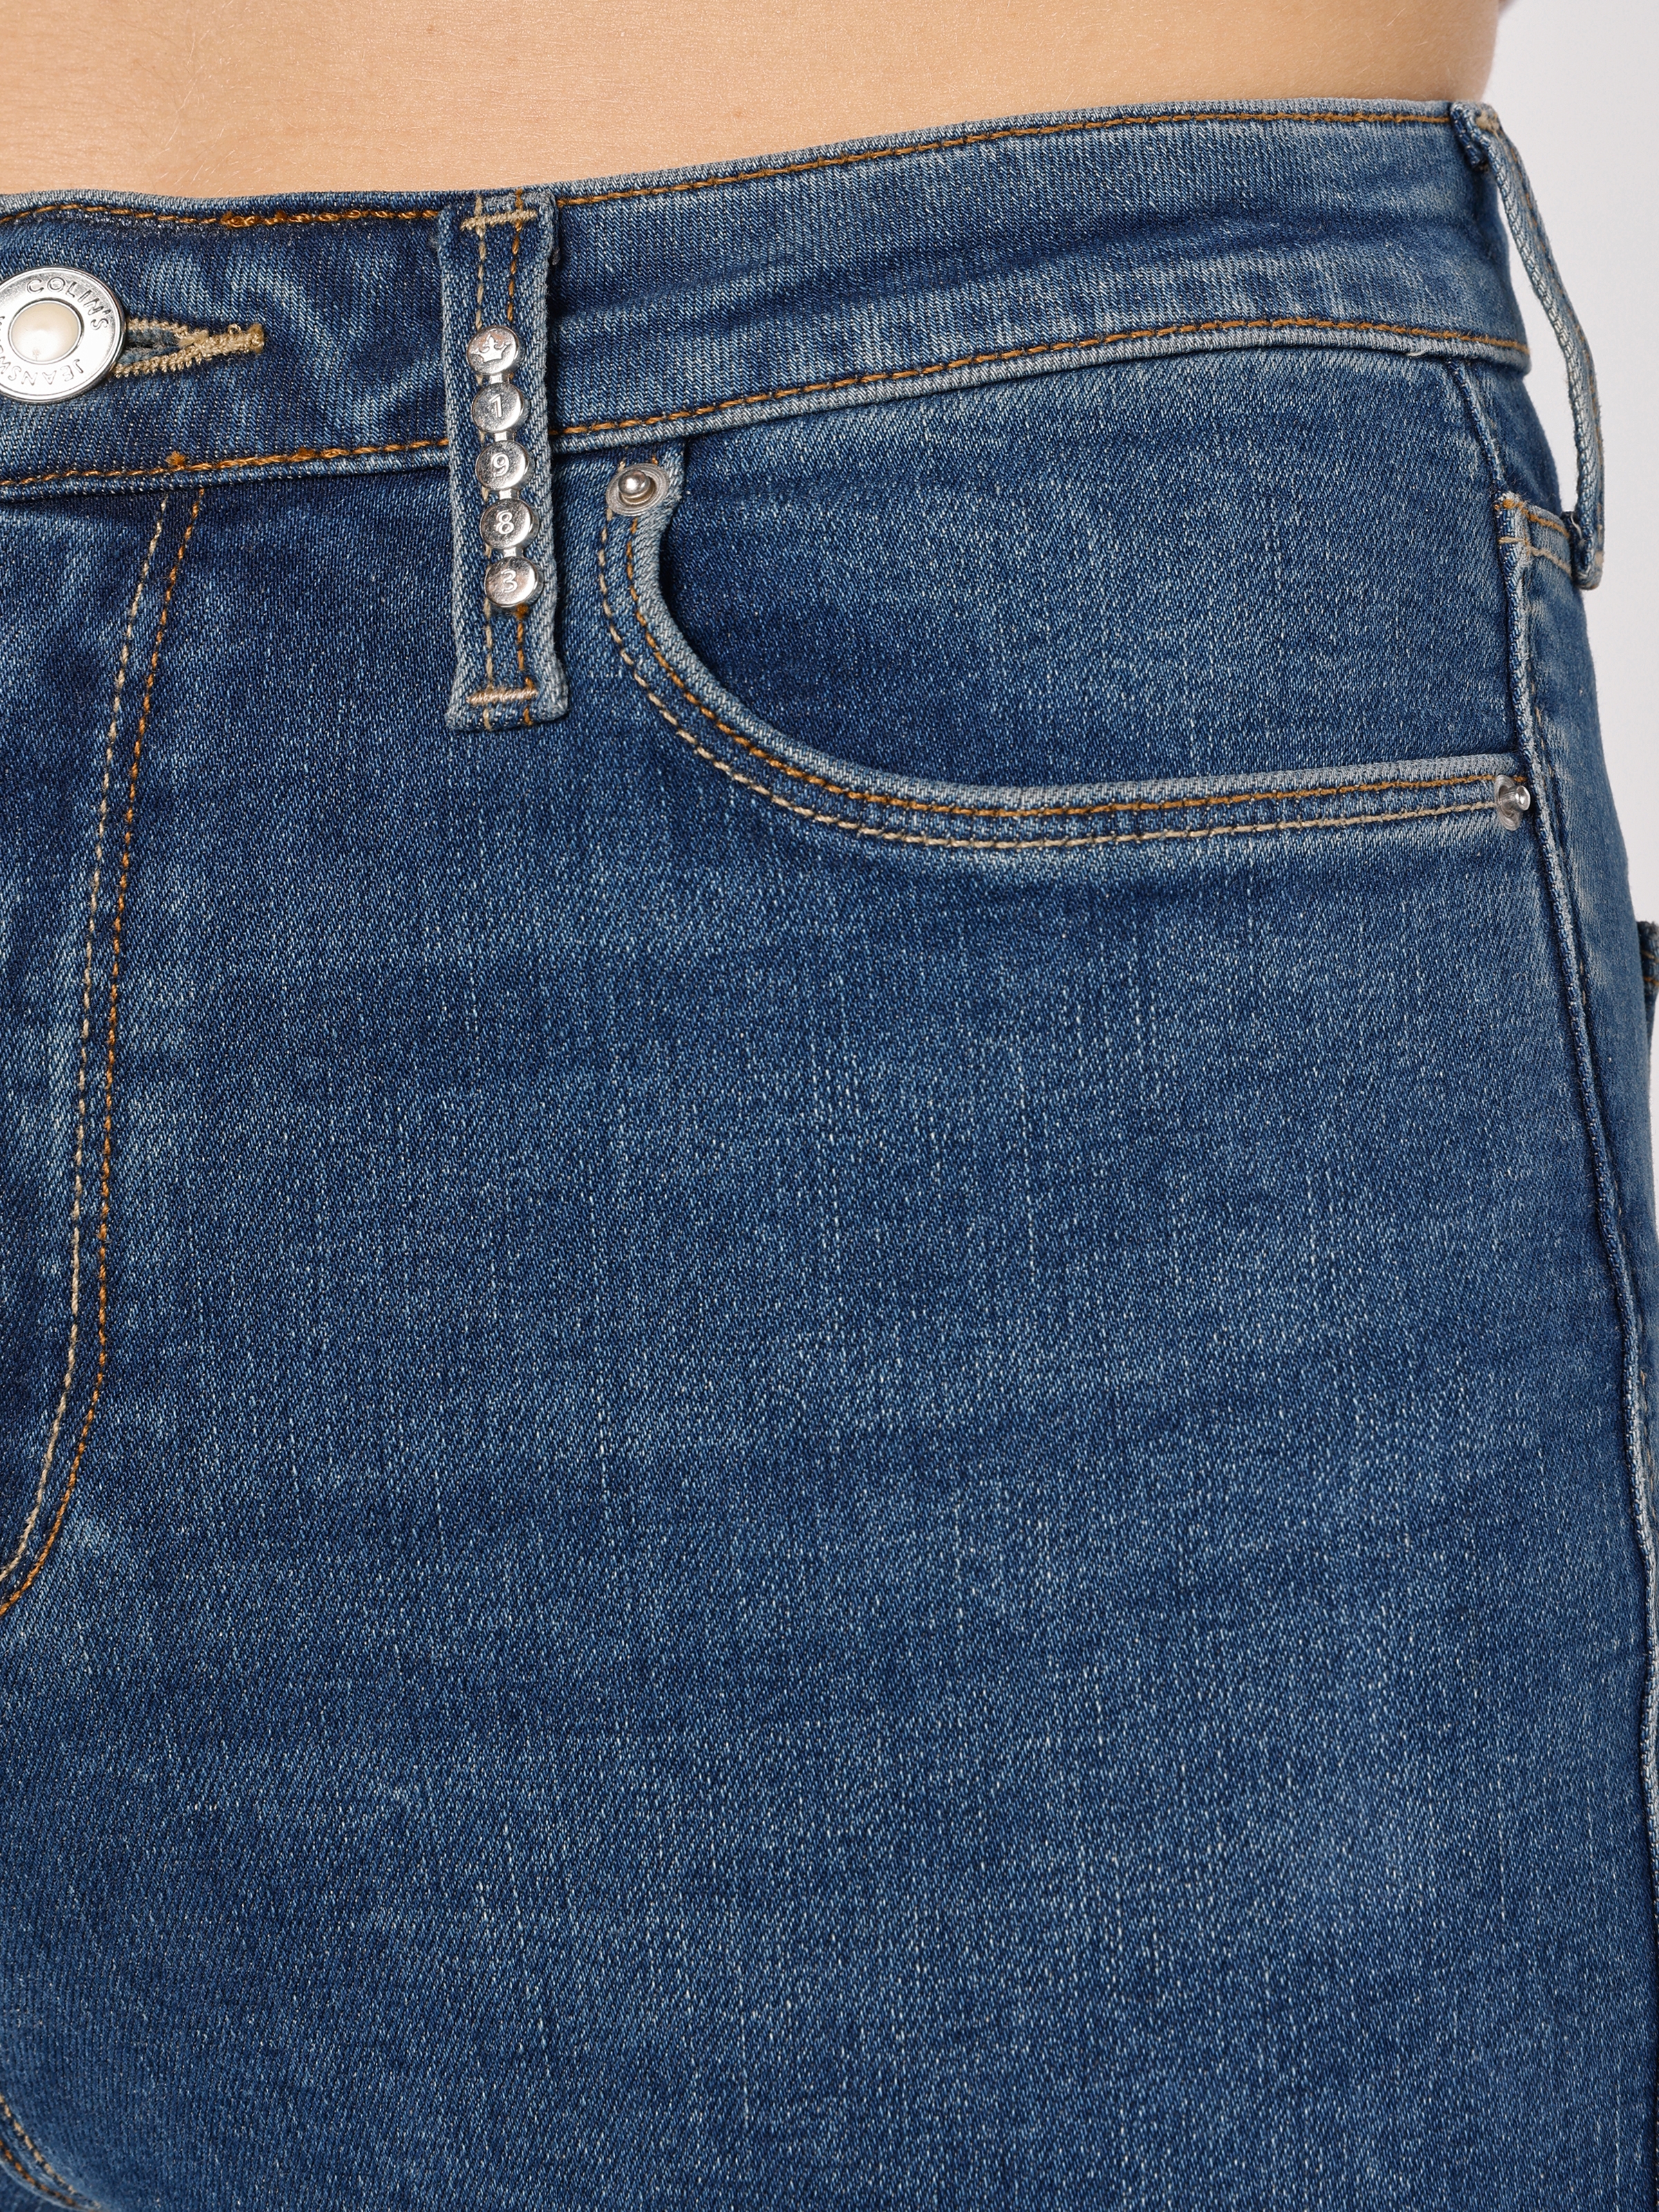 Afișați detalii pentru Pantaloni De Dama Denim Skinny Fit 760 DIANA